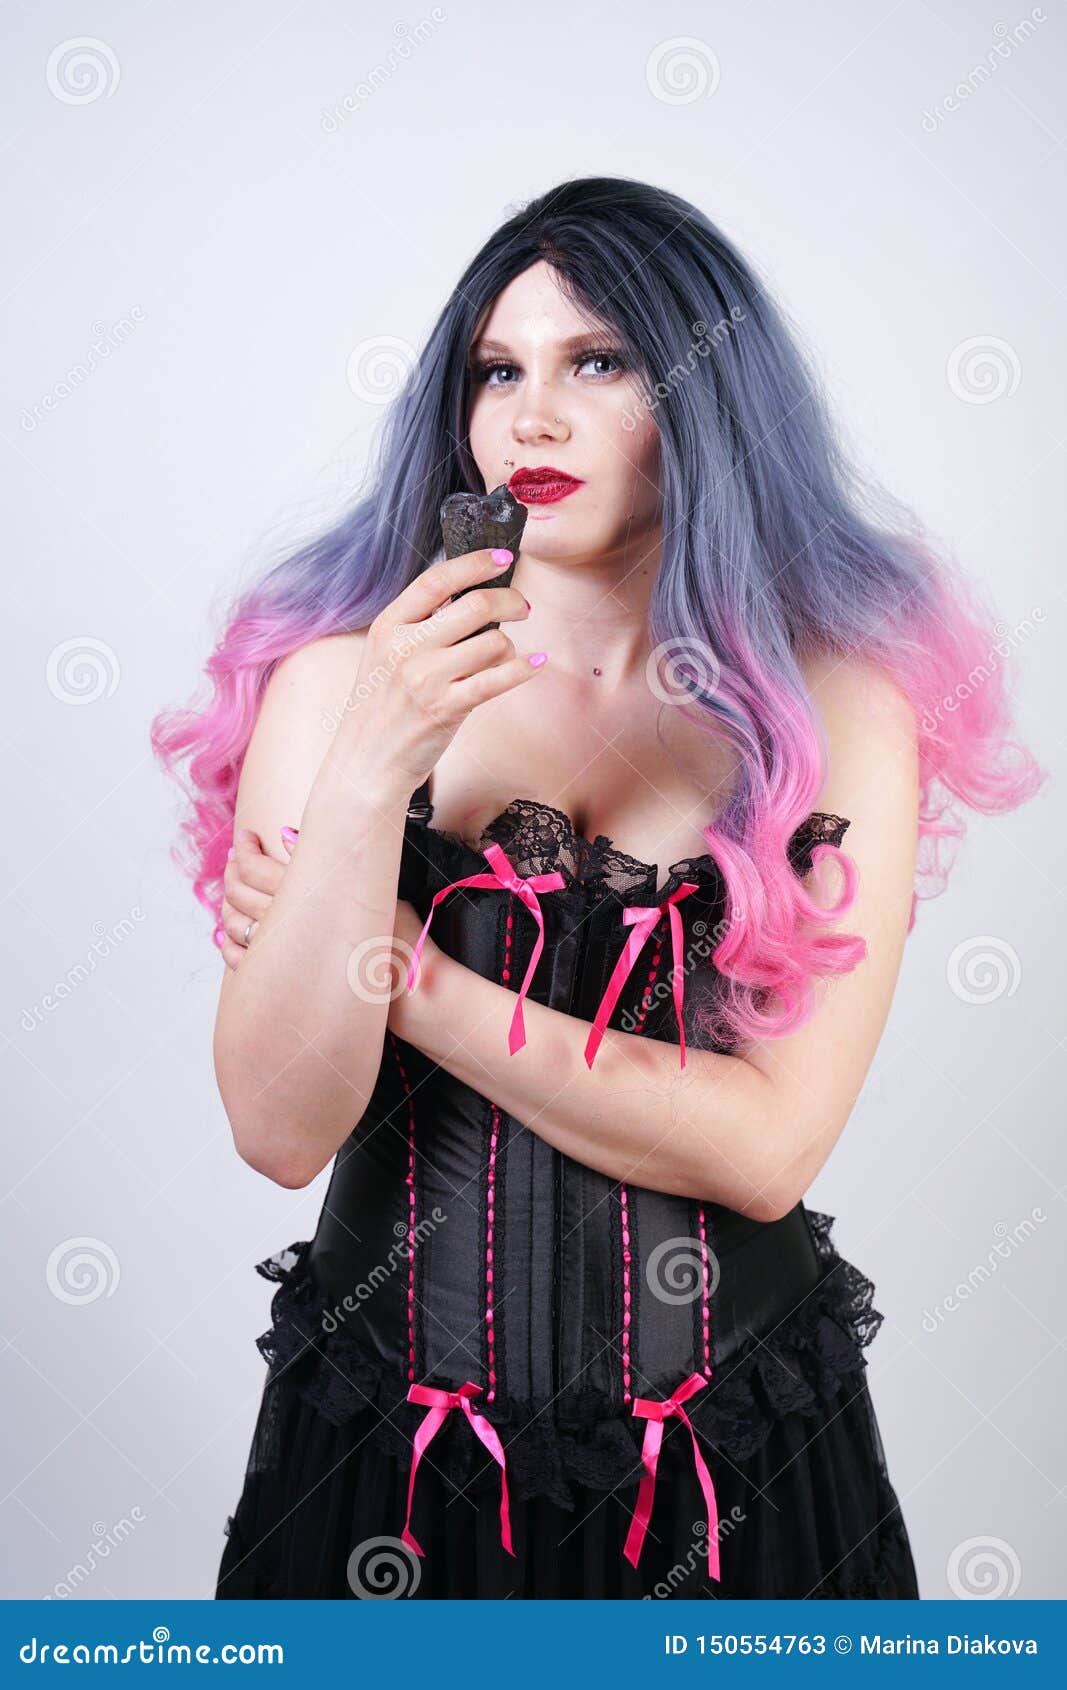 Curvy goth girl